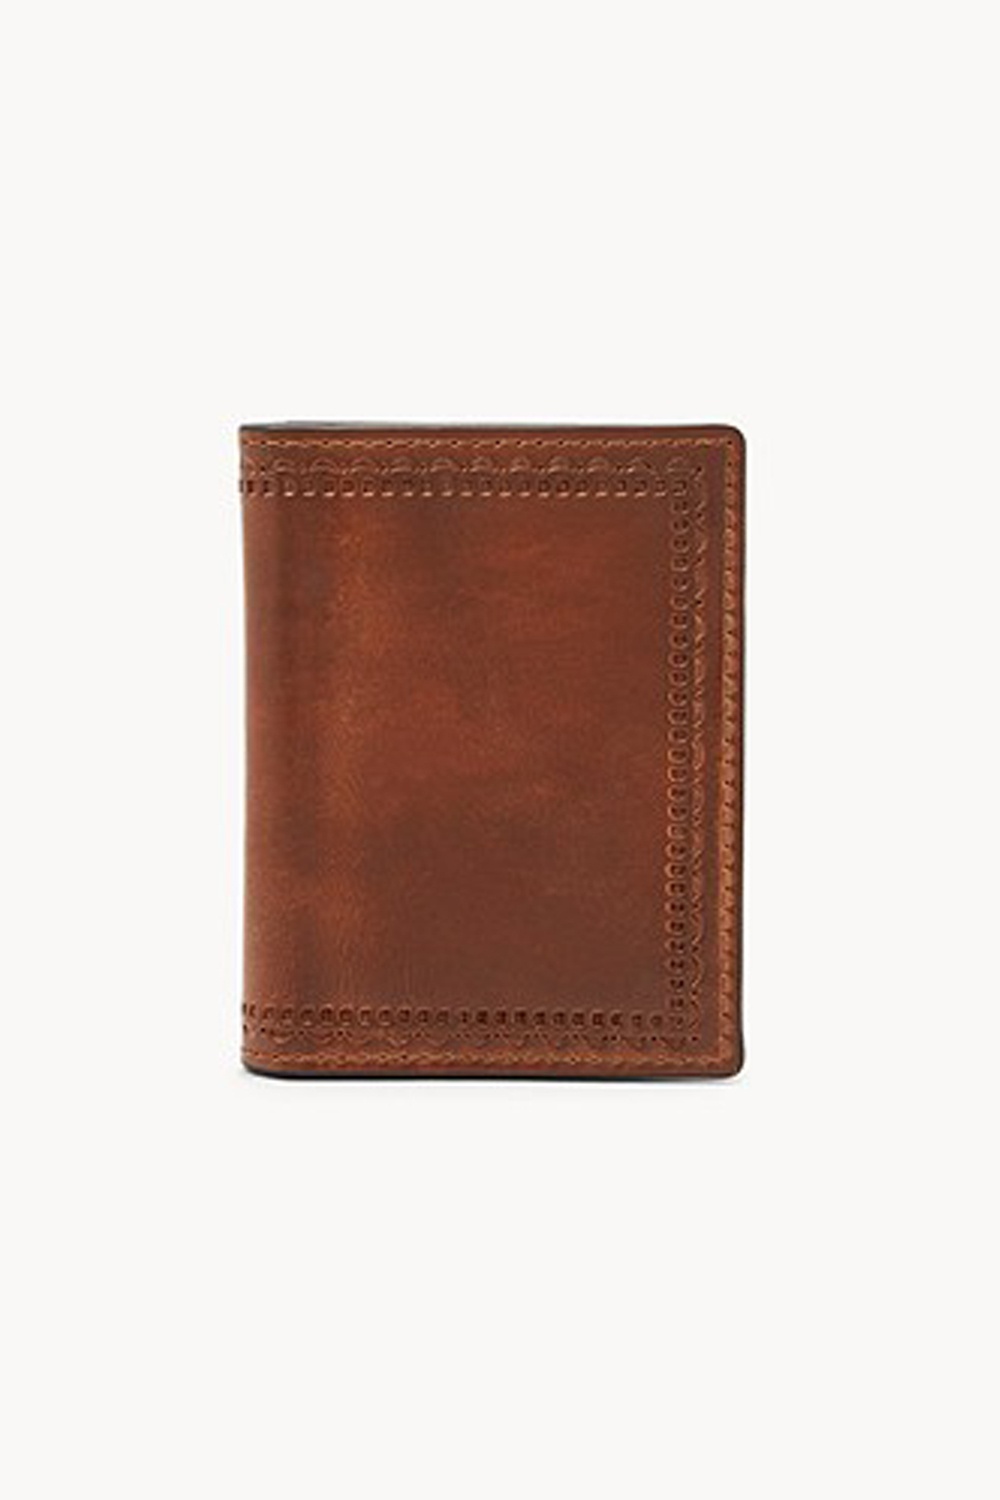 Fossil Leather Men Wallet | Odel.lk